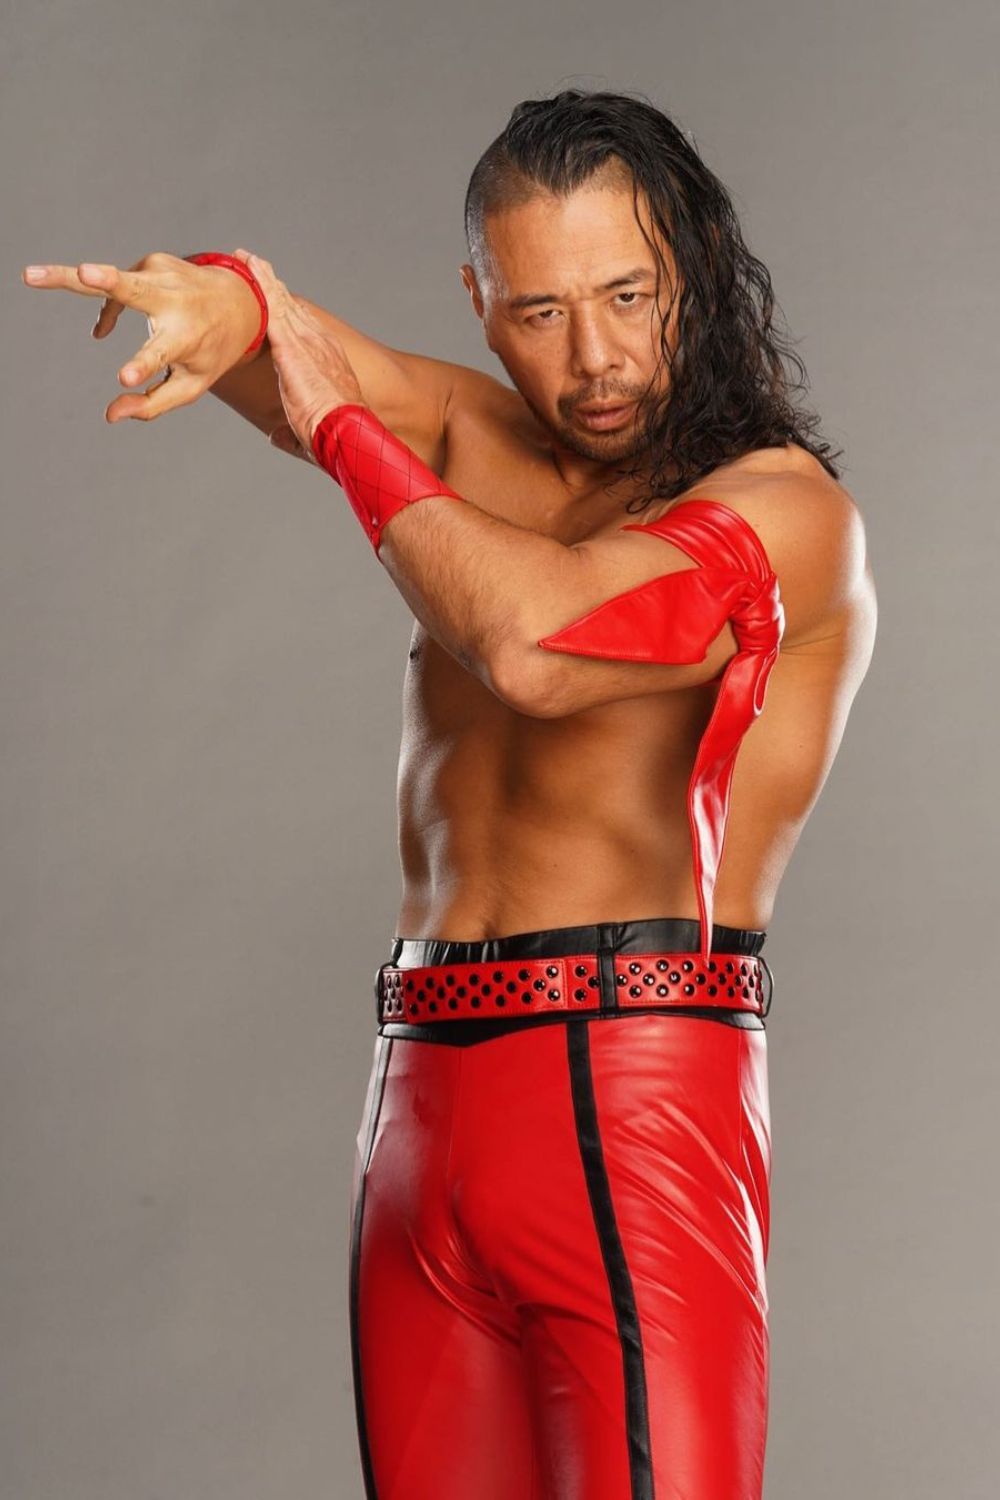 Japanese Professional Wrestler Shinsuke Nakamura